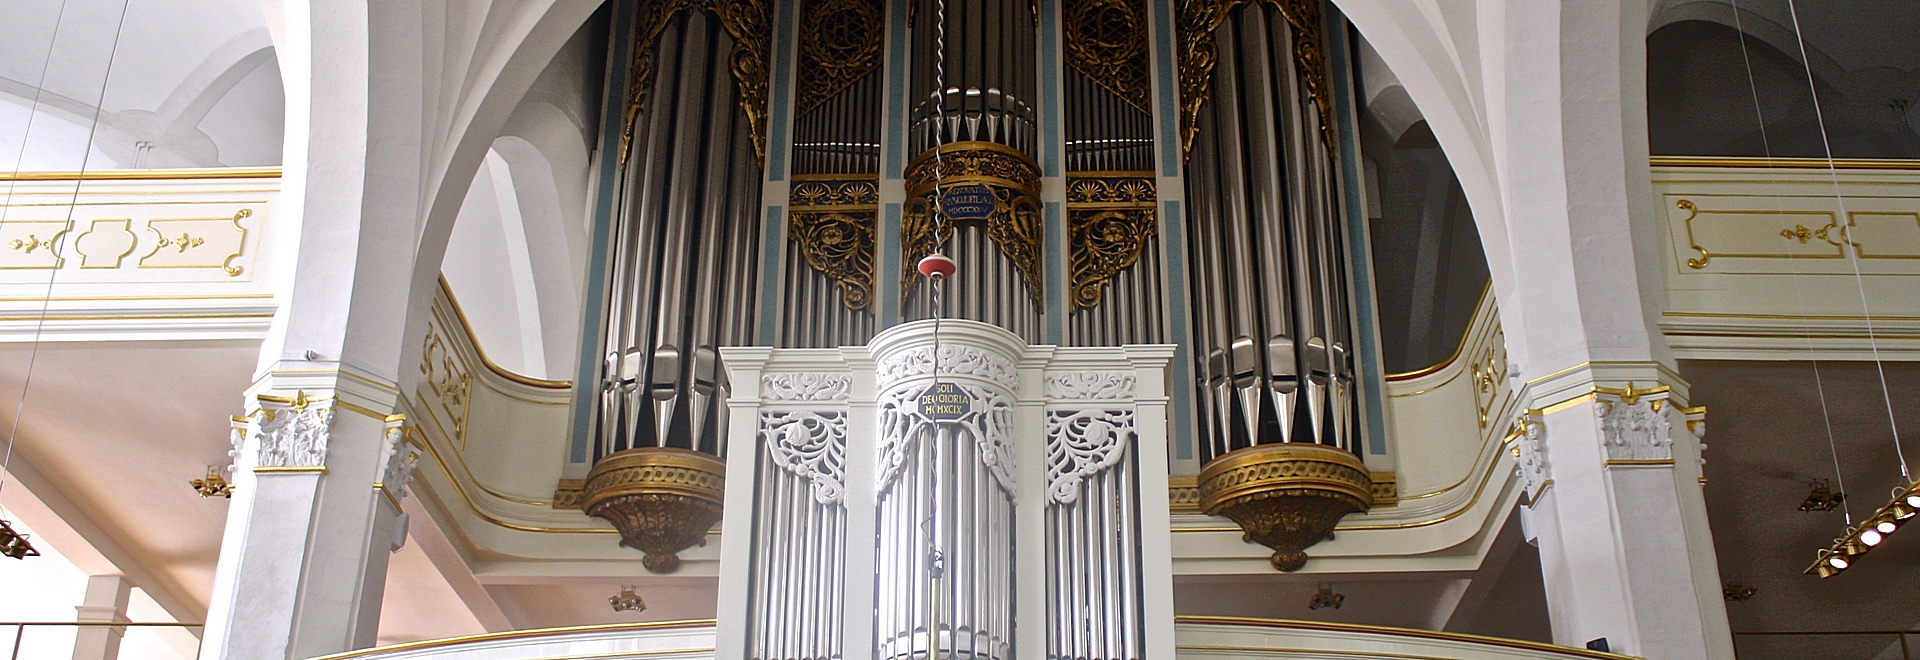 Organ in Weimar